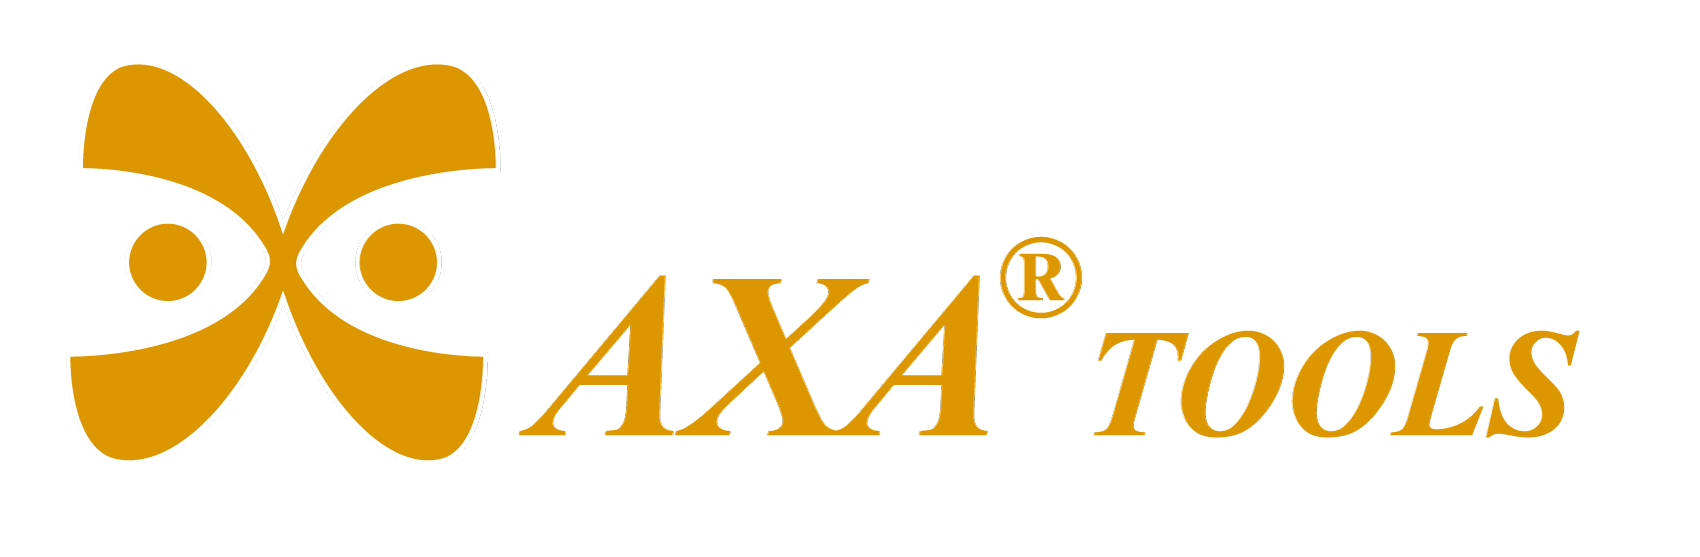 Axa tools brand logo